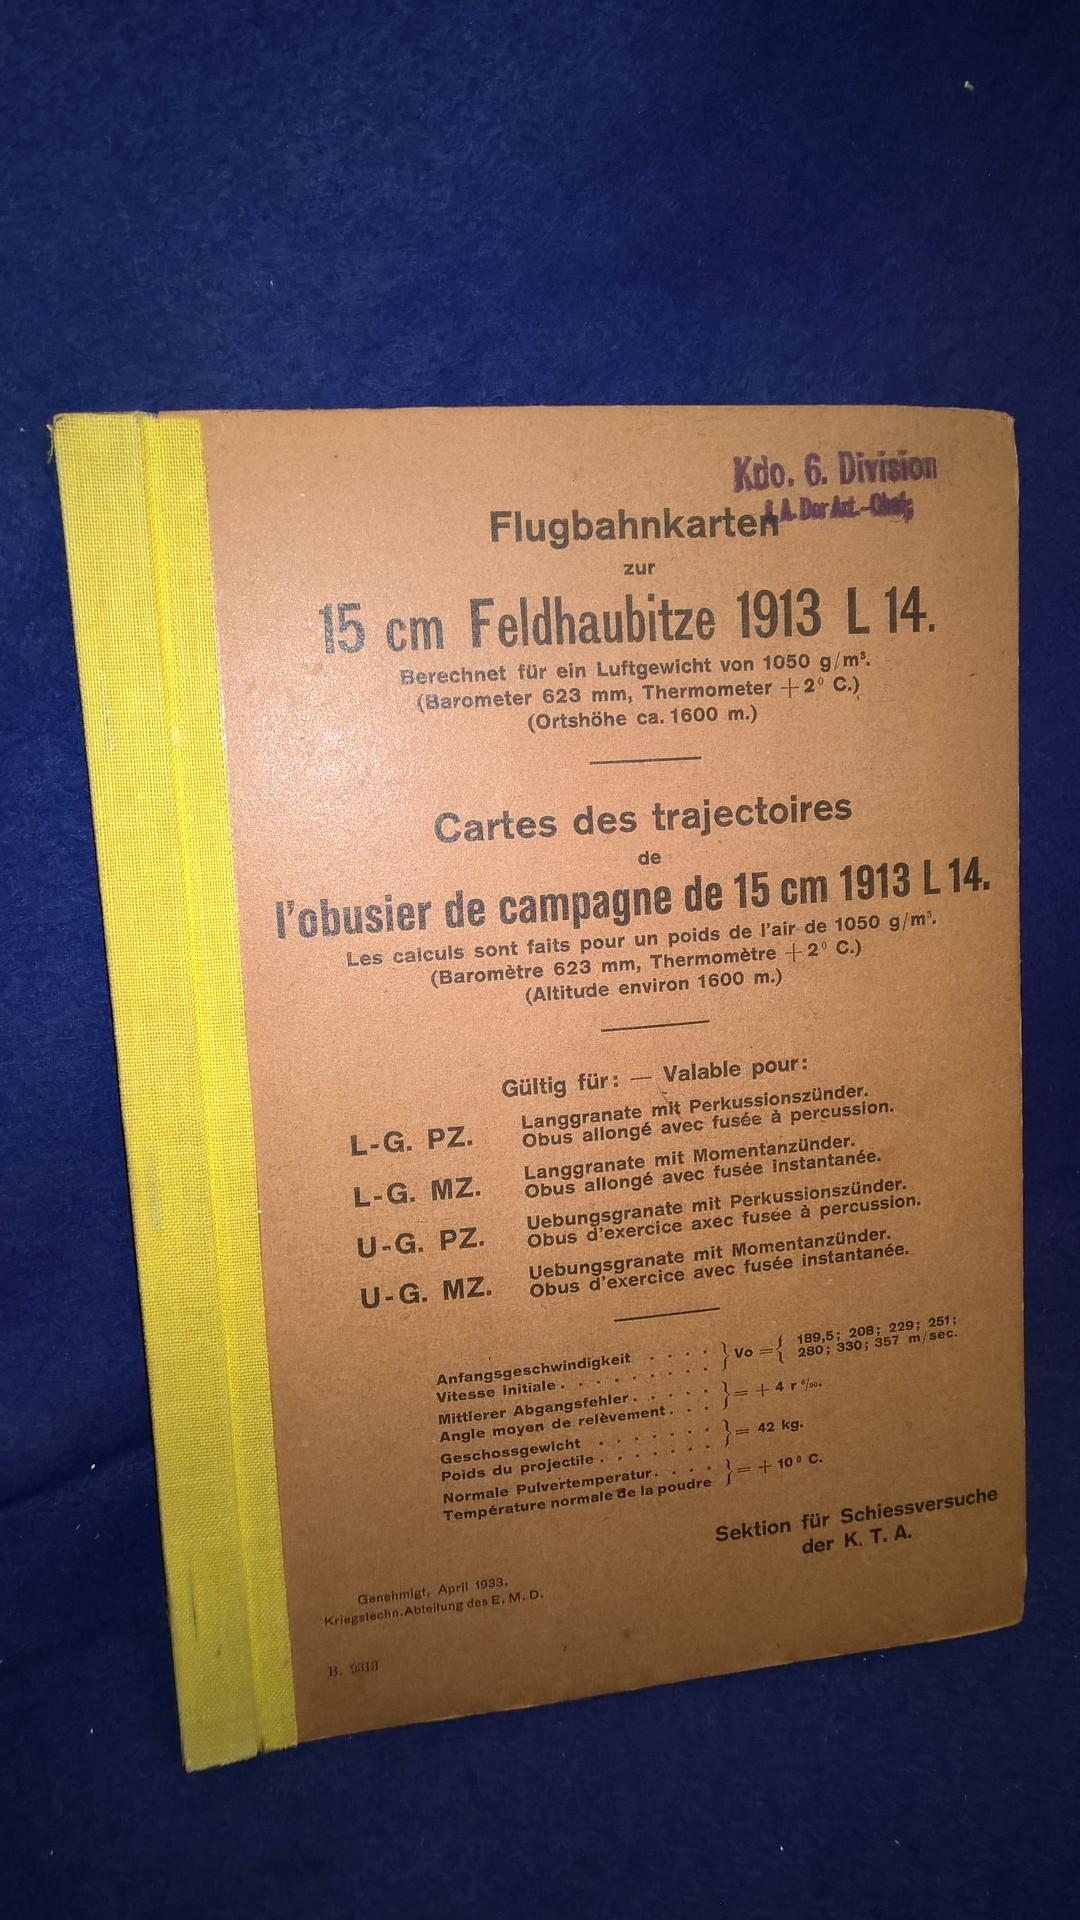 Flugbahnkarten zur 15cm Feldhaubitze 1913 L 14.